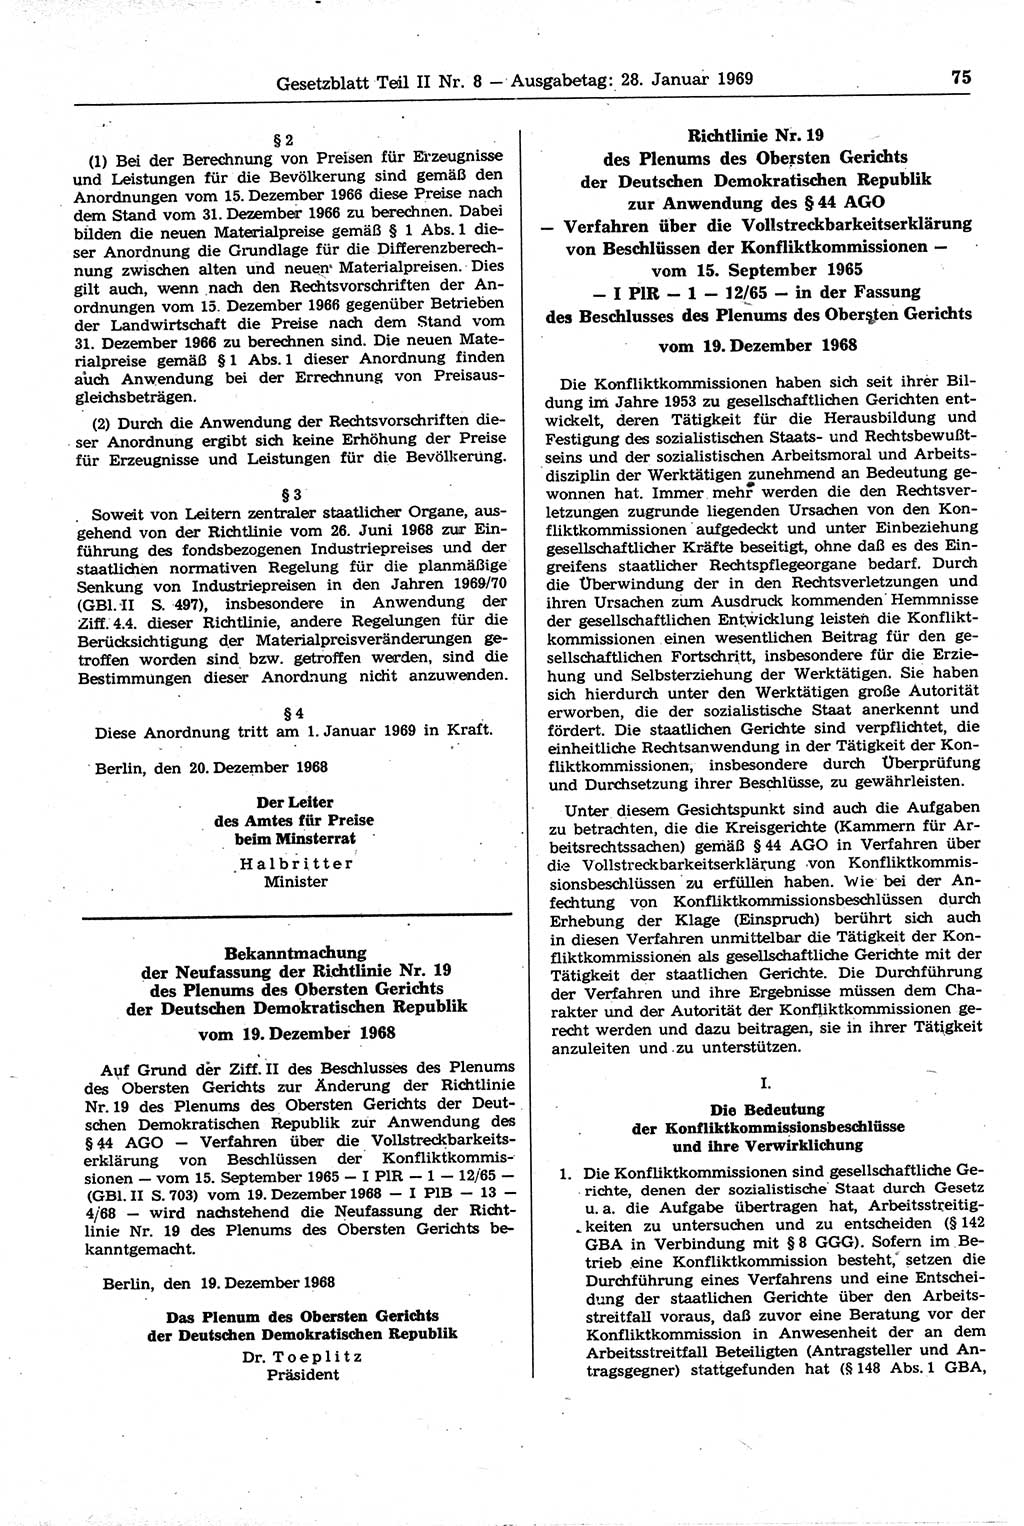 Gesetzblatt (GBl.) der Deutschen Demokratischen Republik (DDR) Teil ⅠⅠ 1969, Seite 75 (GBl. DDR ⅠⅠ 1969, S. 75)